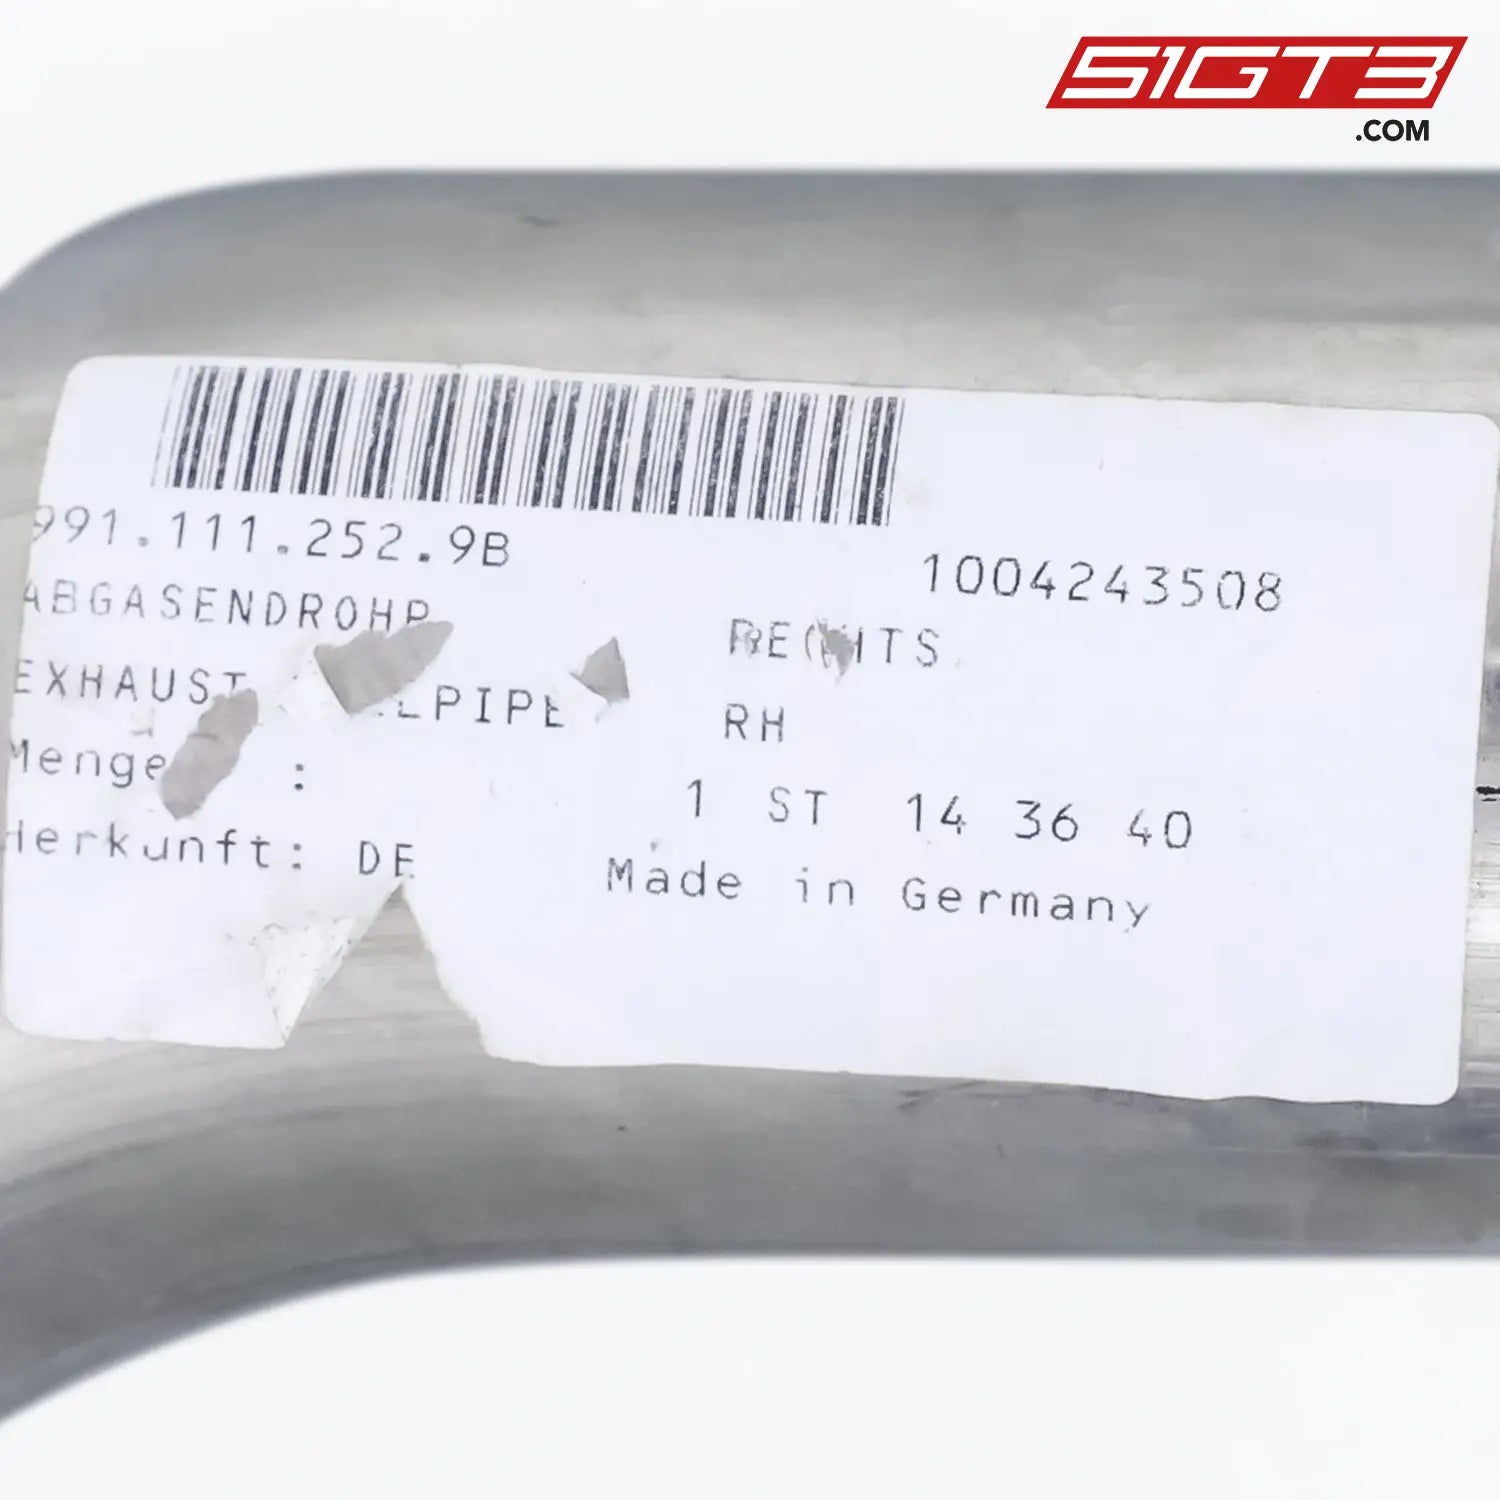 Exhaust Tailpipe Open Right - 9911112529B [Porsche 911 Gt3 Cup Type 991 (Gen 2)]